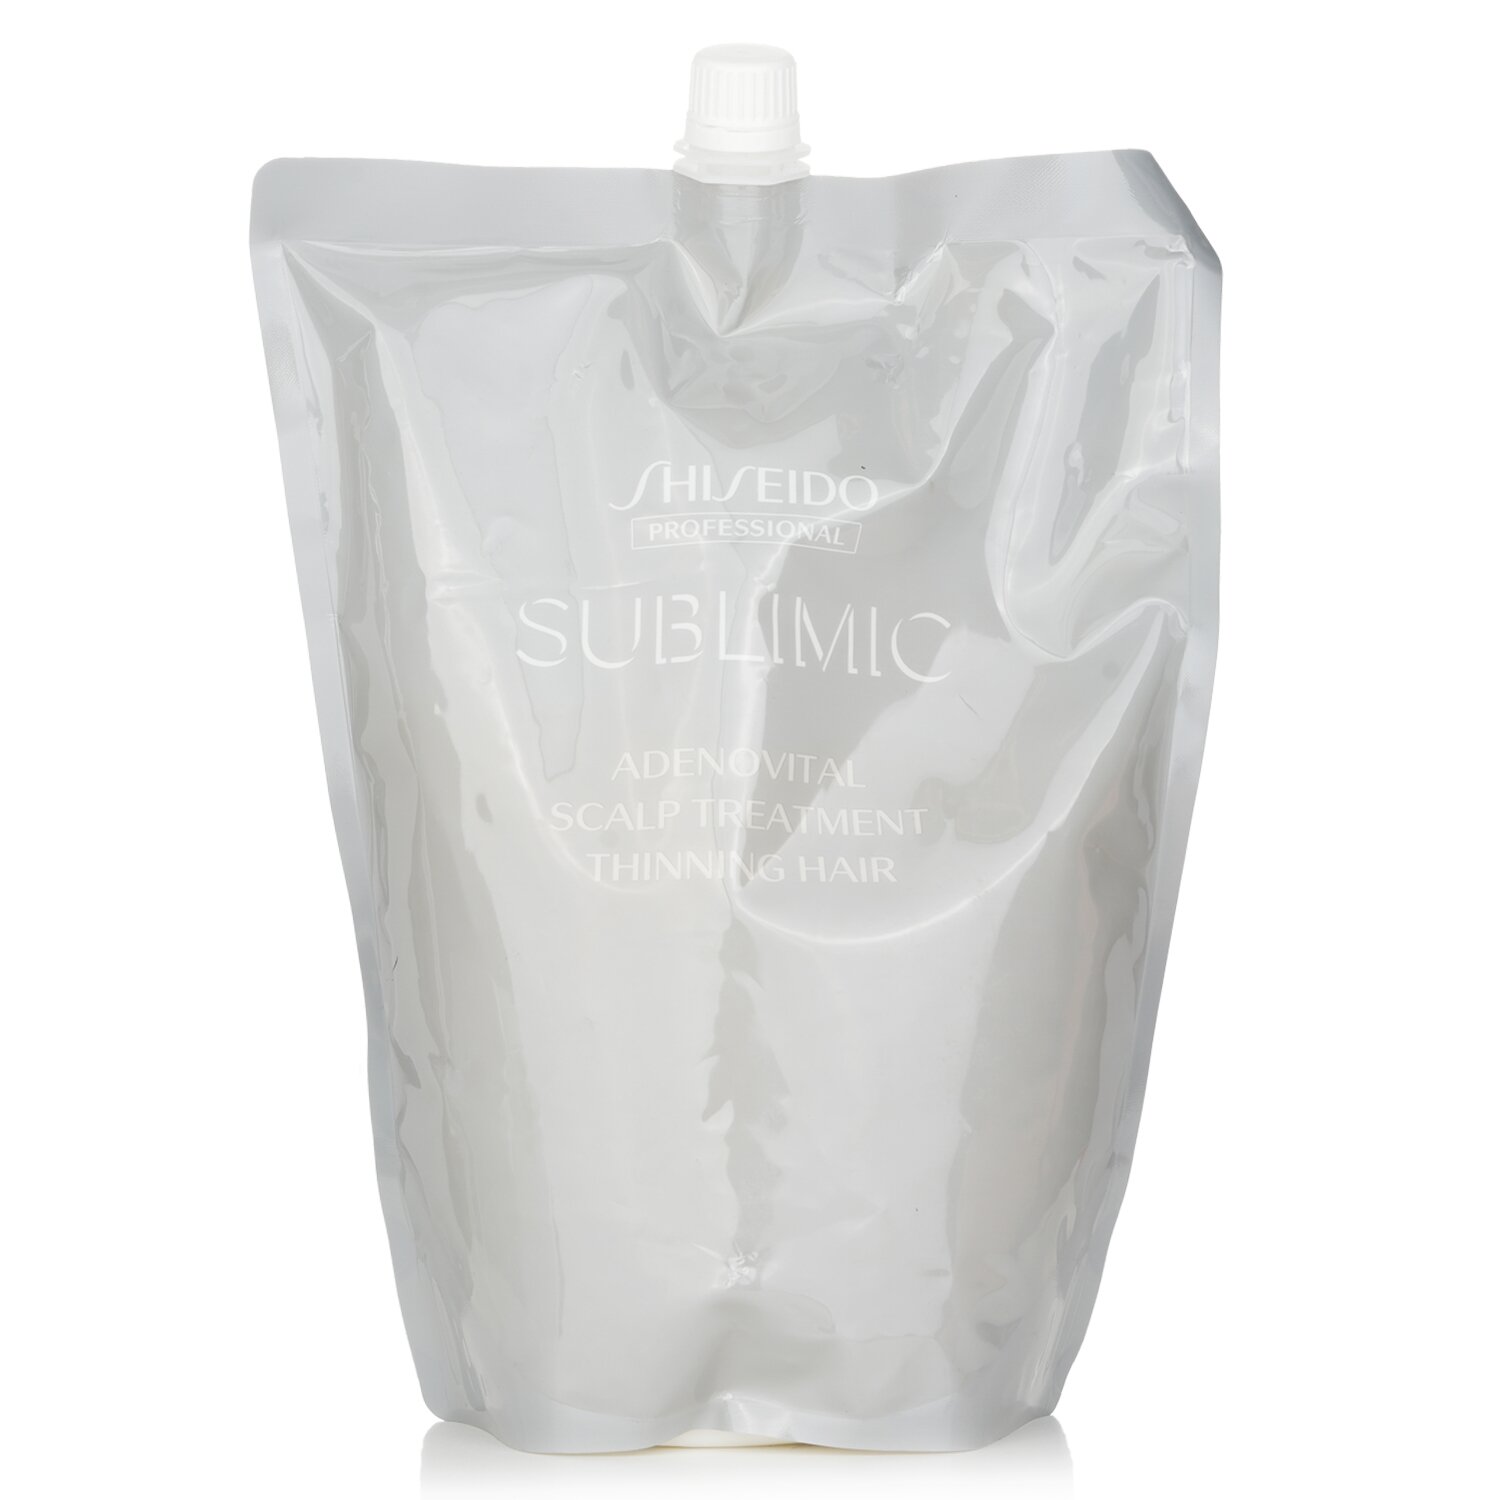 資生堂 Shiseido - 極緻育髮頭皮層護理素 補充裝 (稀薄髮質)